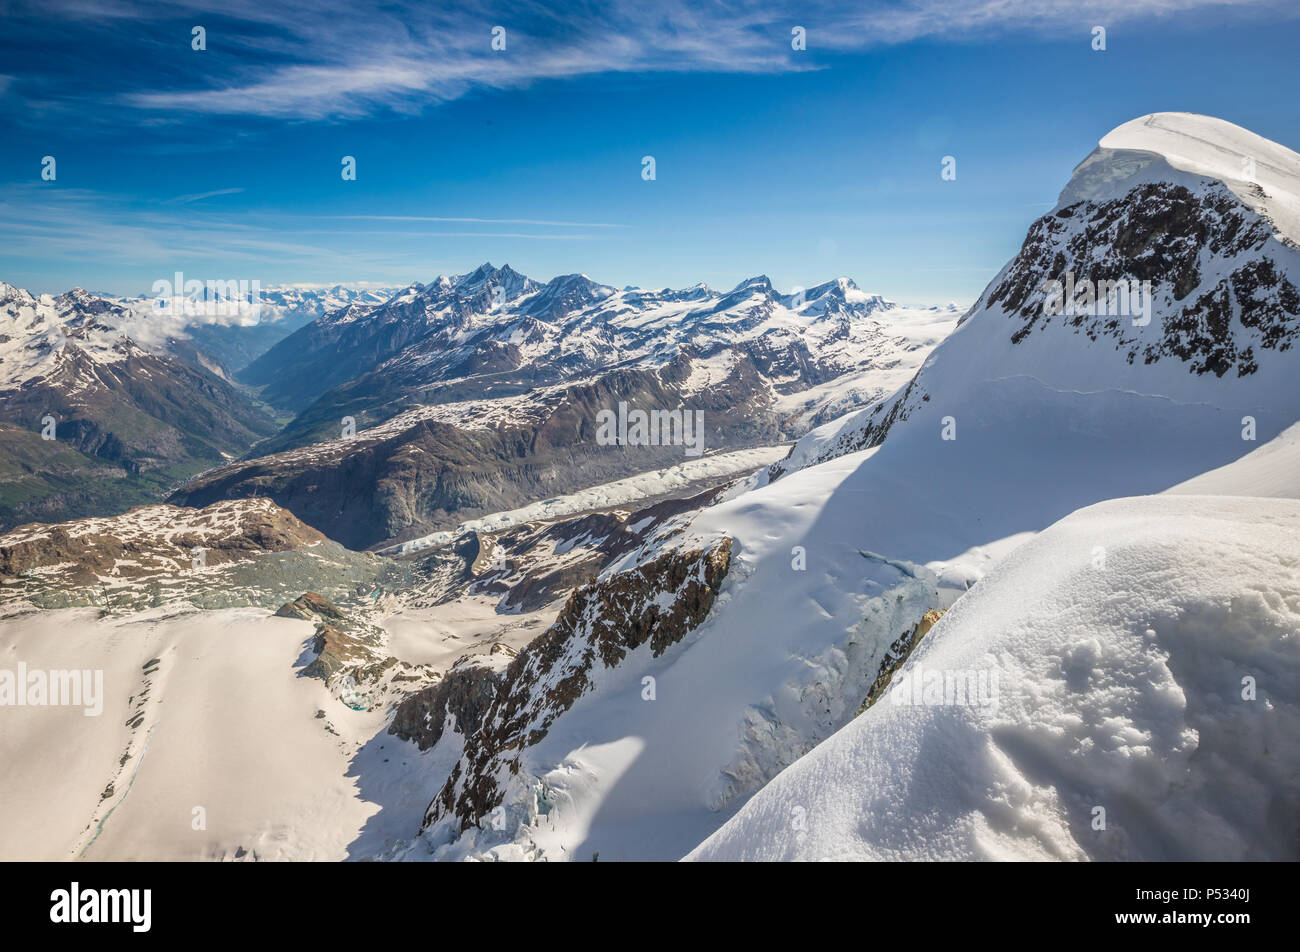 Swiss Alps as seen from Matterhorn Stock Photo